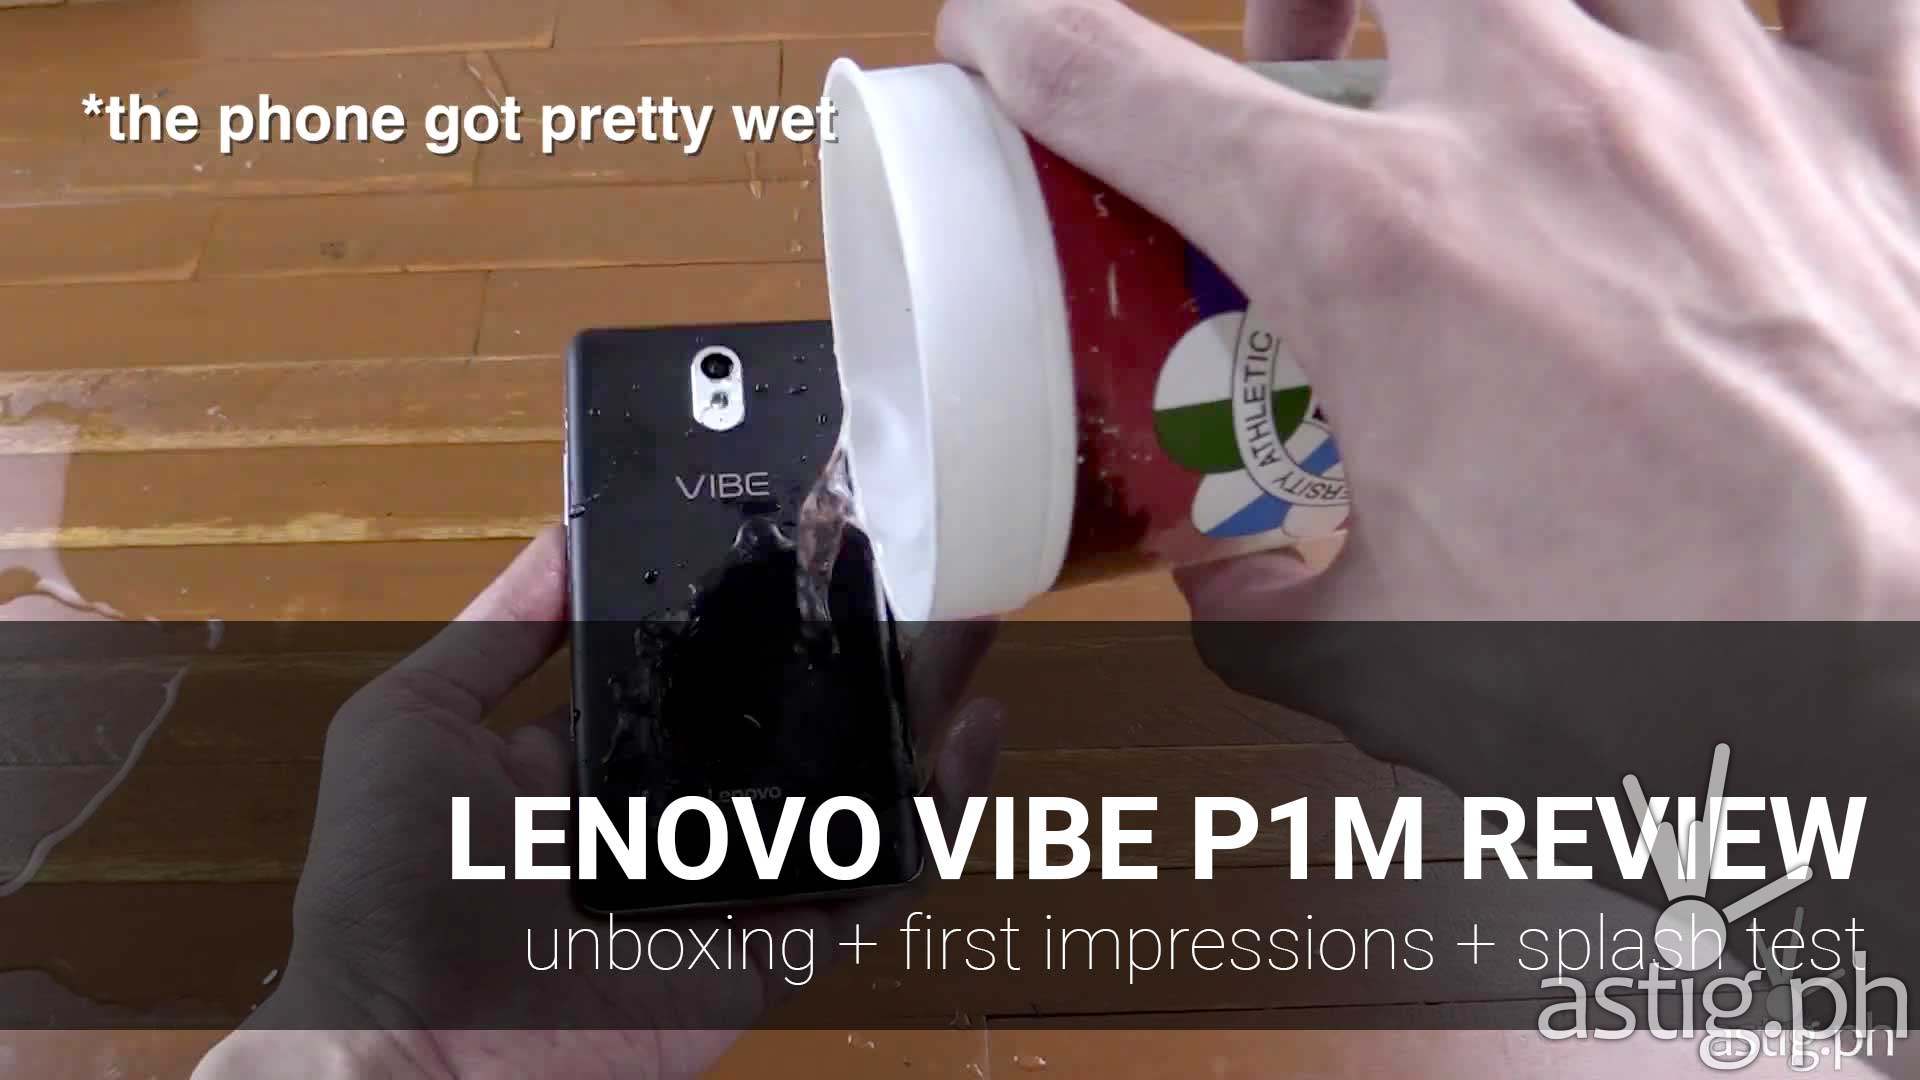 Lenovo Vibe P1m Review